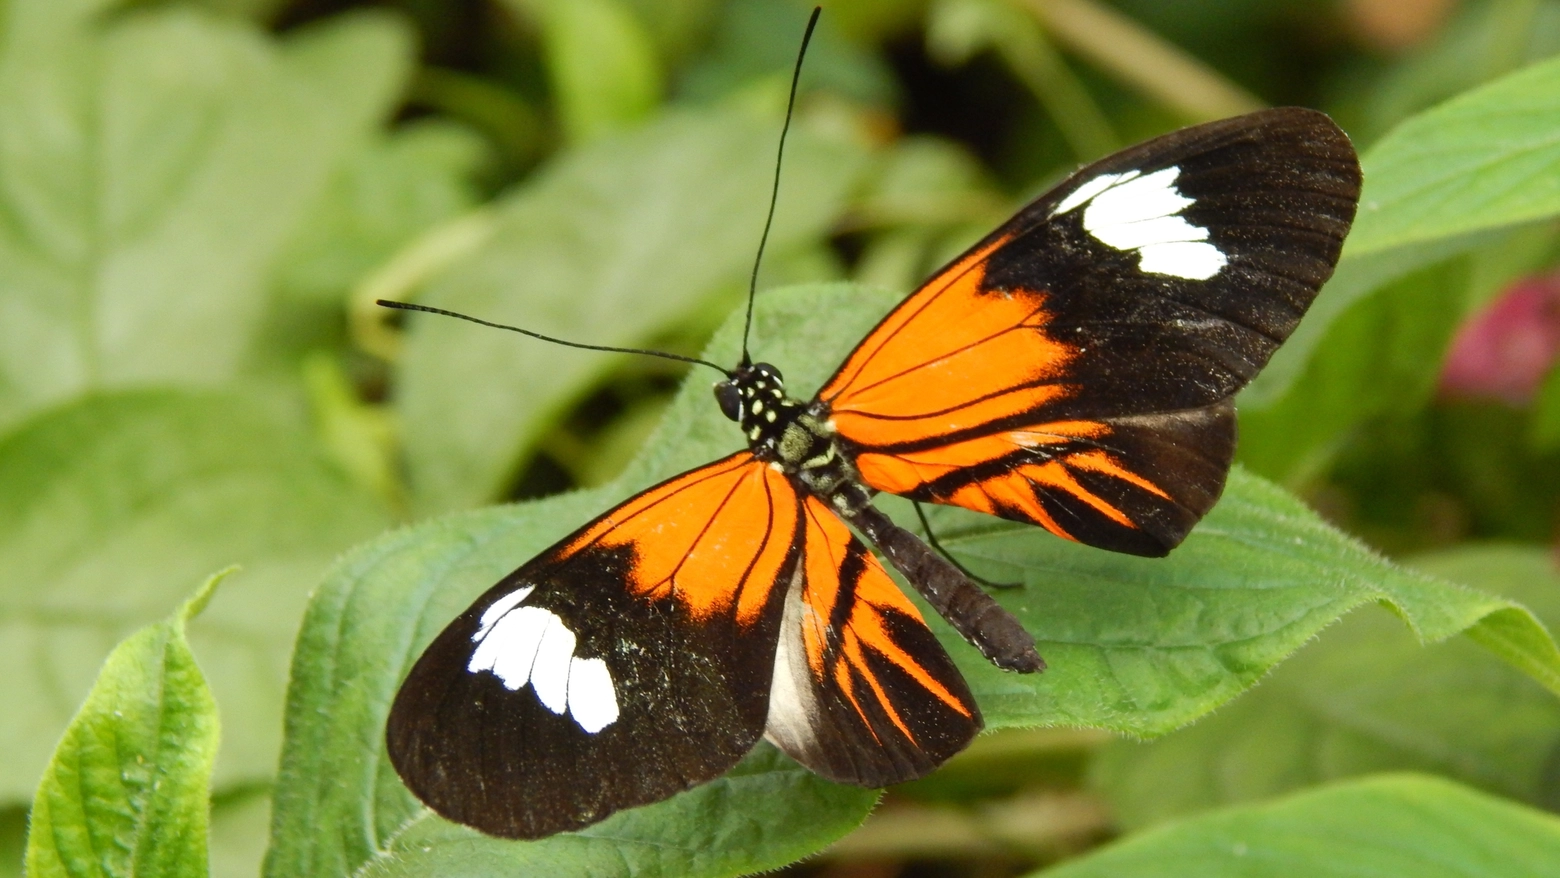 La farfalla amazzonica Heliconius elevatus è un ibrido. Lo sostiene uno studio pubblicato su Nature. L’entomologo Enzo Moretto: “Perché è un caso raro e quali sono le difese anche fantasiose delle piante per sfuggire alla predazione”